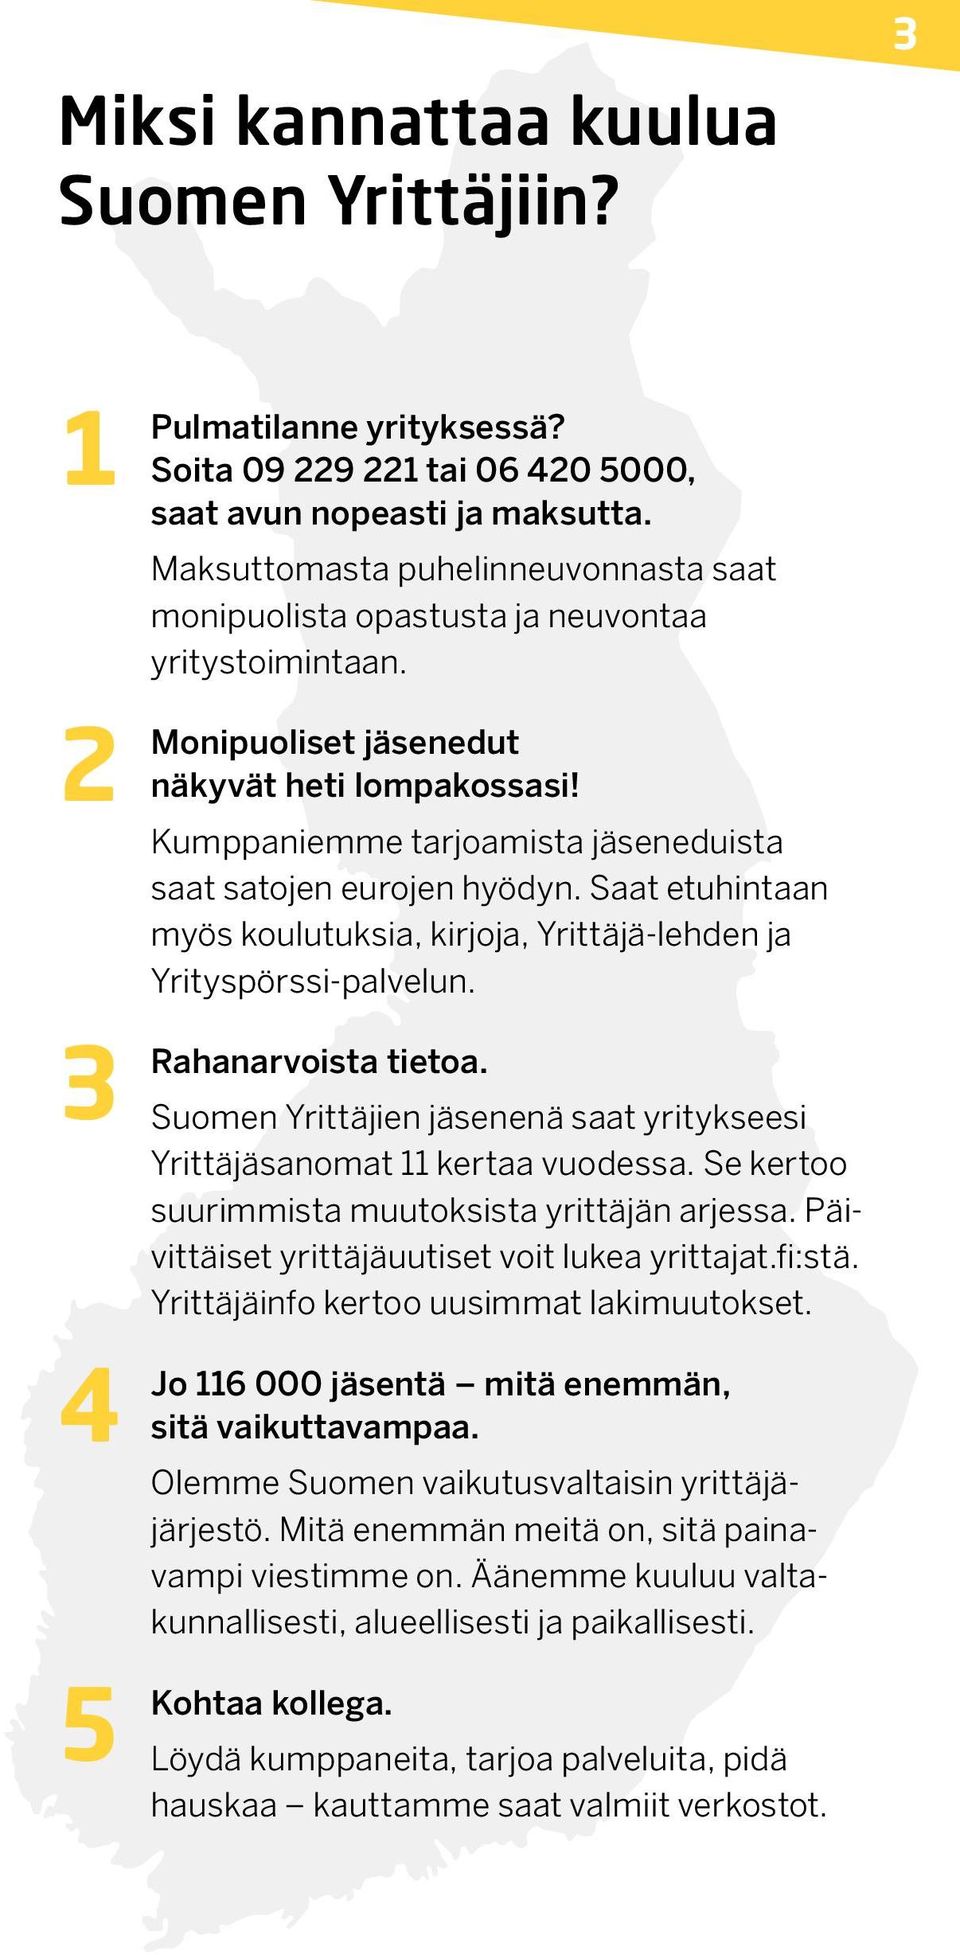 Saat etuhintaan myös koulutuksia, kirjoja, Yrittäjä-lehden ja Yrityspörssi-palvelun. tietoa. Suomen Yrittäjien jäsenenä saat yritykseesi Yrittäjäsanomat 11 kertaa vuodessa.